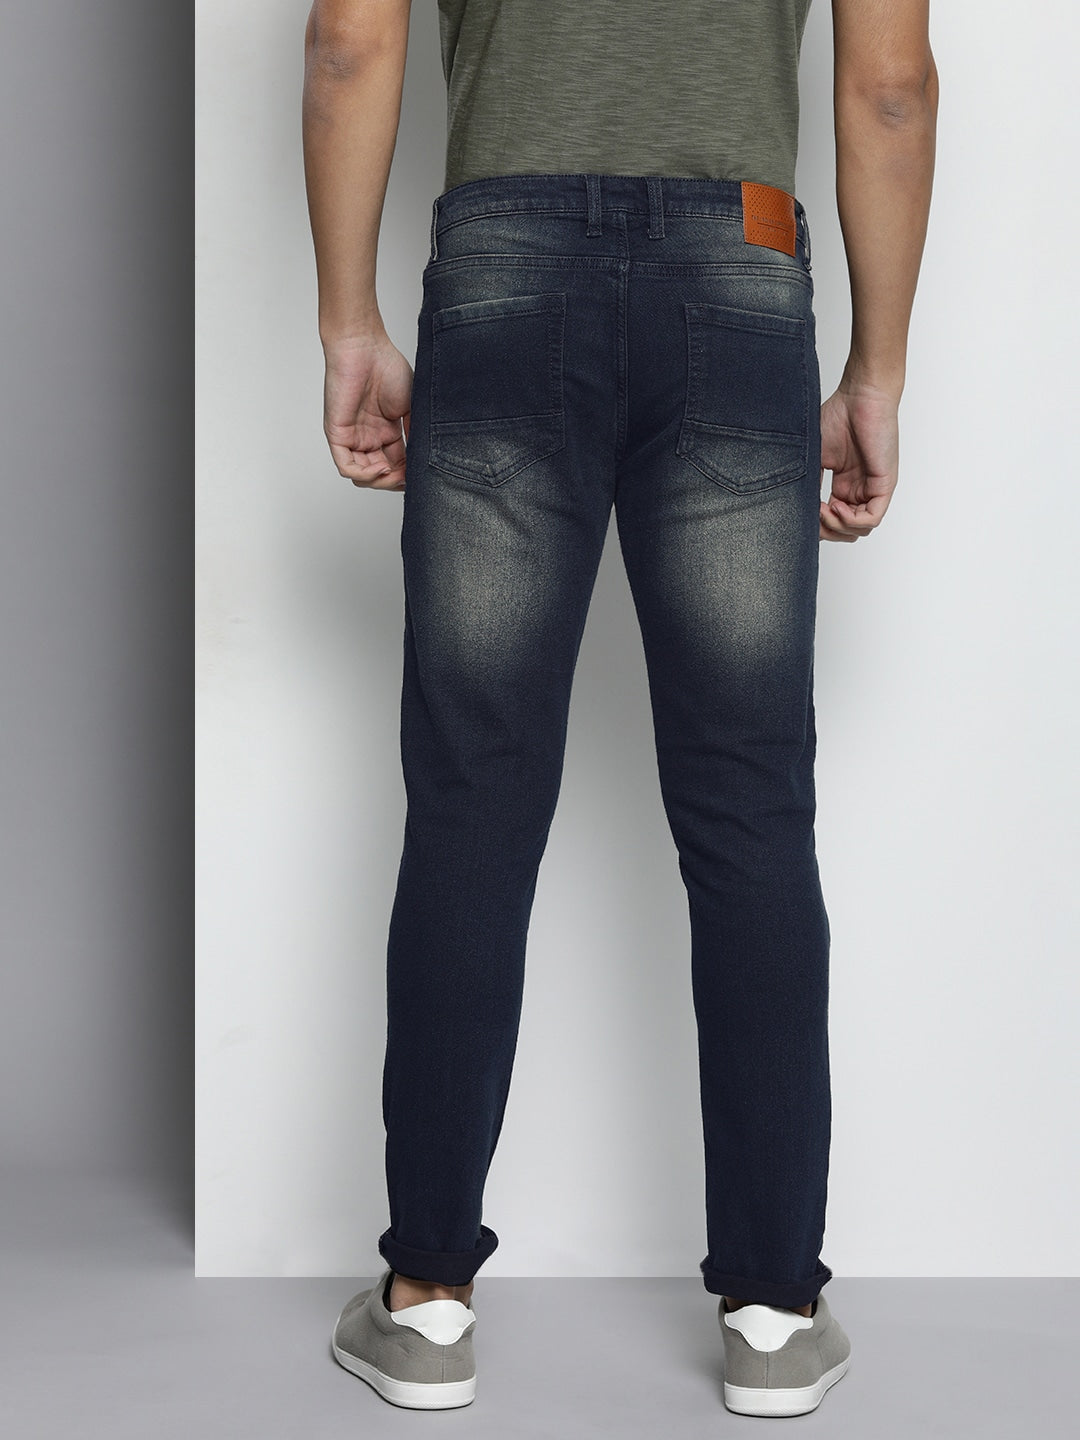 Shop Men Skinny Jeans Online.